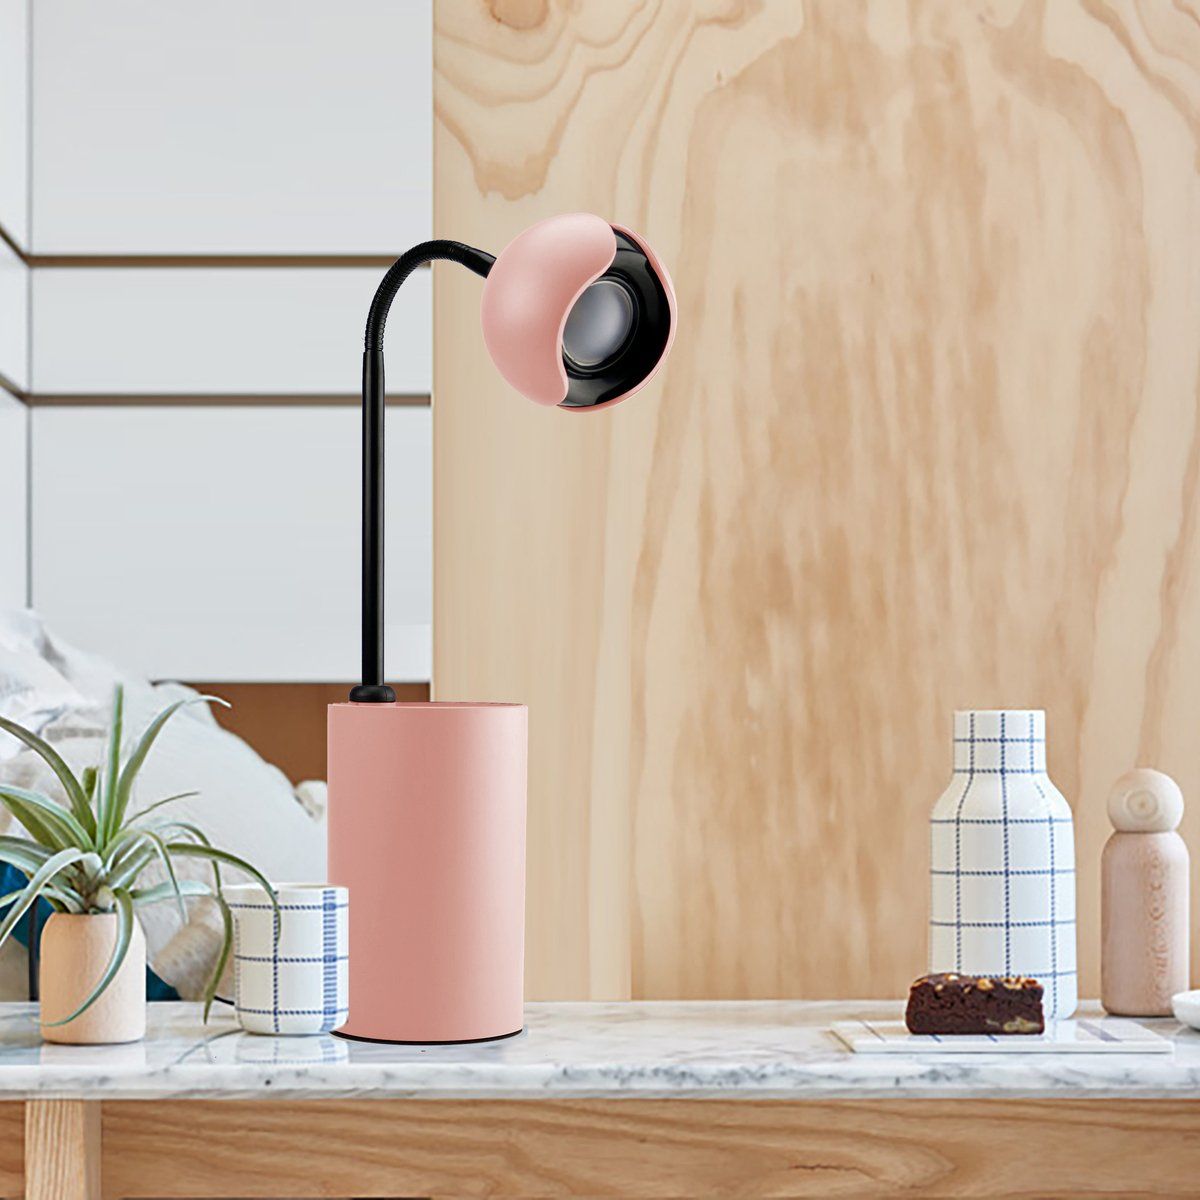 Lampe de bureau flexible LED POT en plastique rose